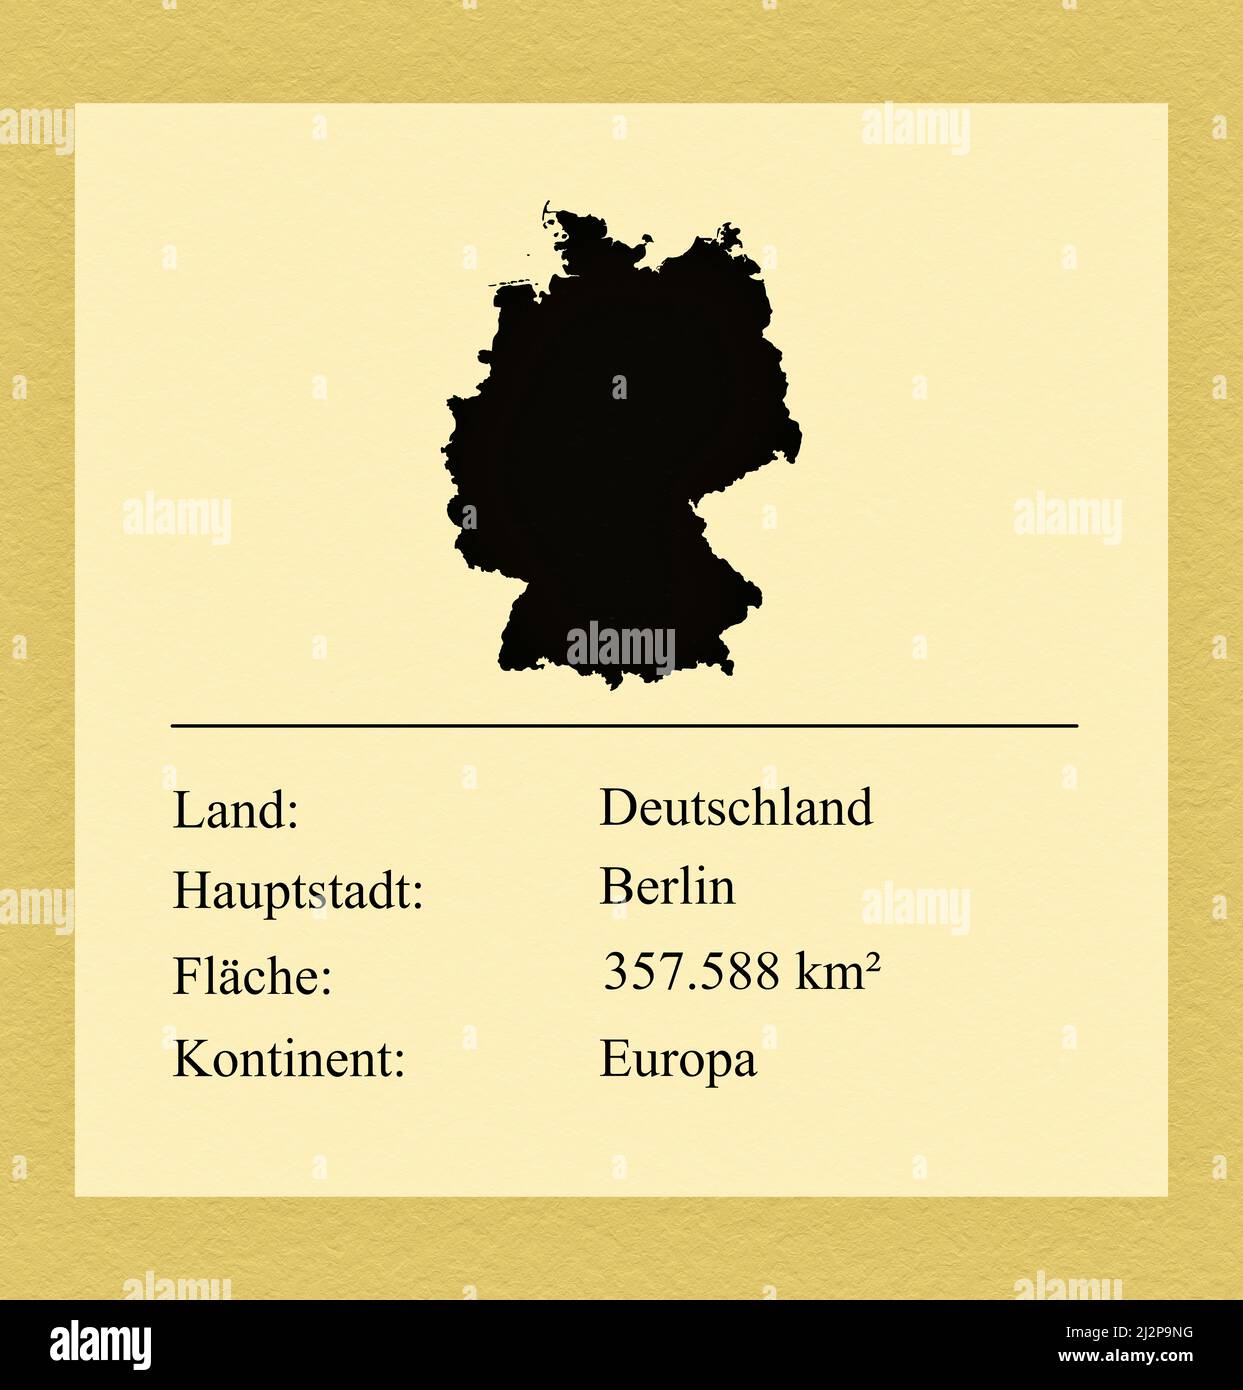 Umrisse des Landes Deutschland, darunter ein kleiner Steckbrief mit Ländernamen, Hauptstadt, Fläche und Kontinent Foto de stock